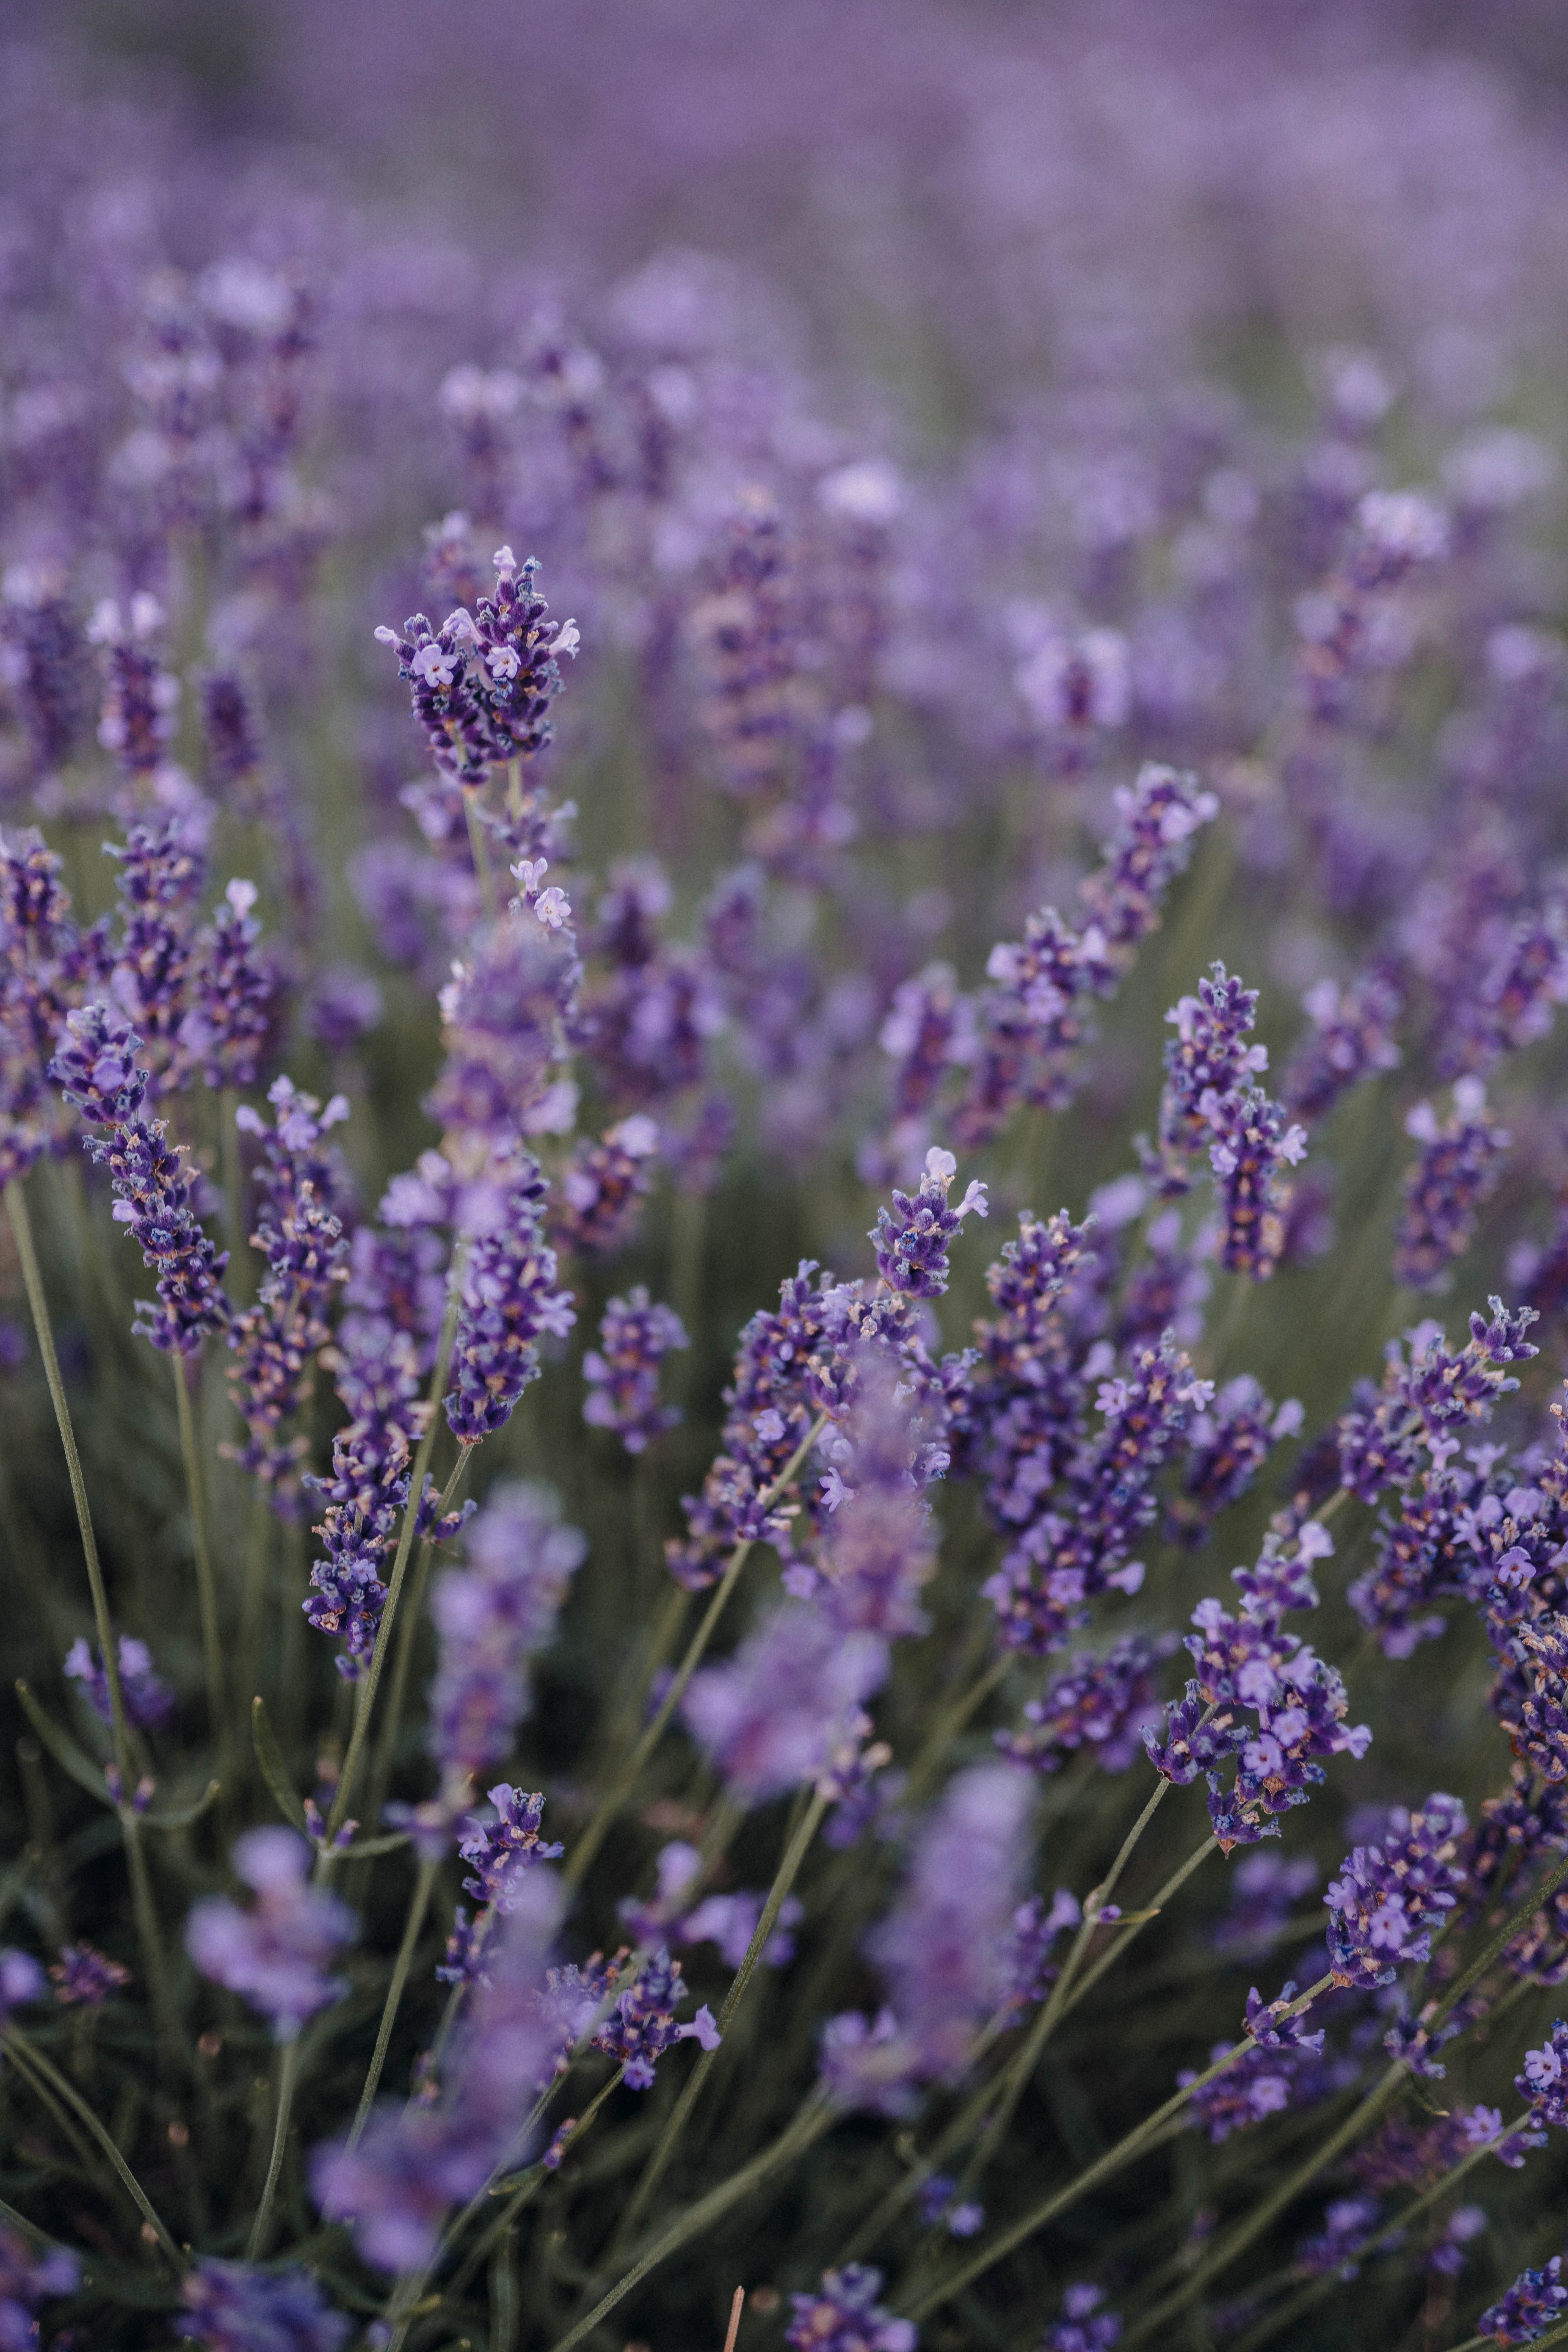 wildflowers, flowers, violet, field, purple, lavender